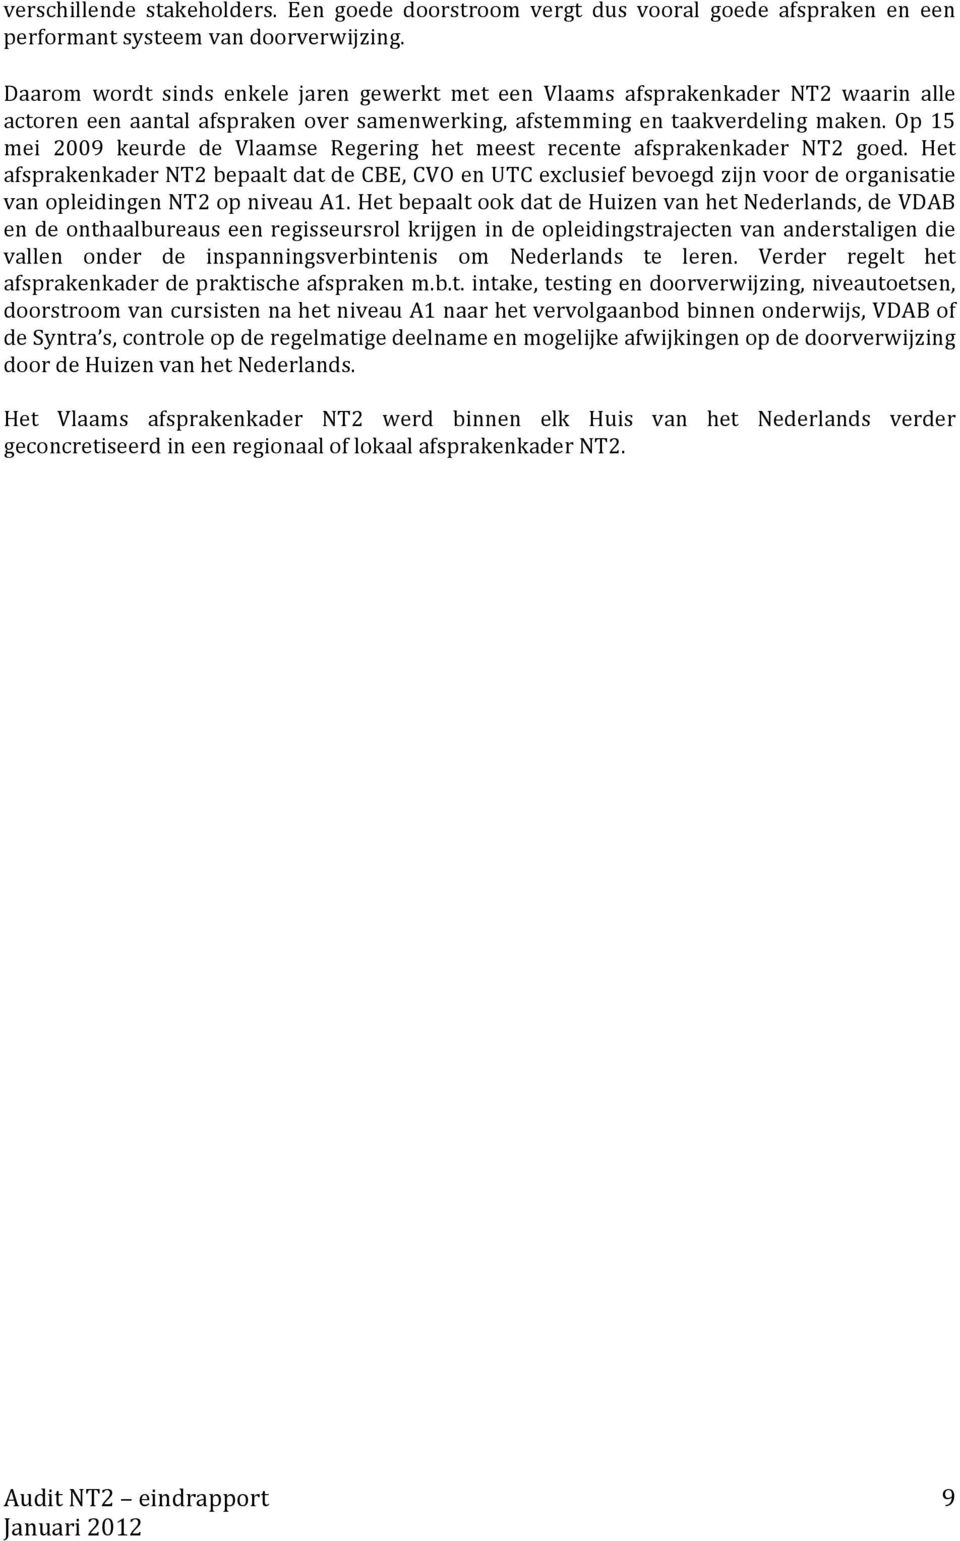 Op 15 mei 2009 keurde de Vlaamse Regering het meest recente afsprakenkader NT2 goed.